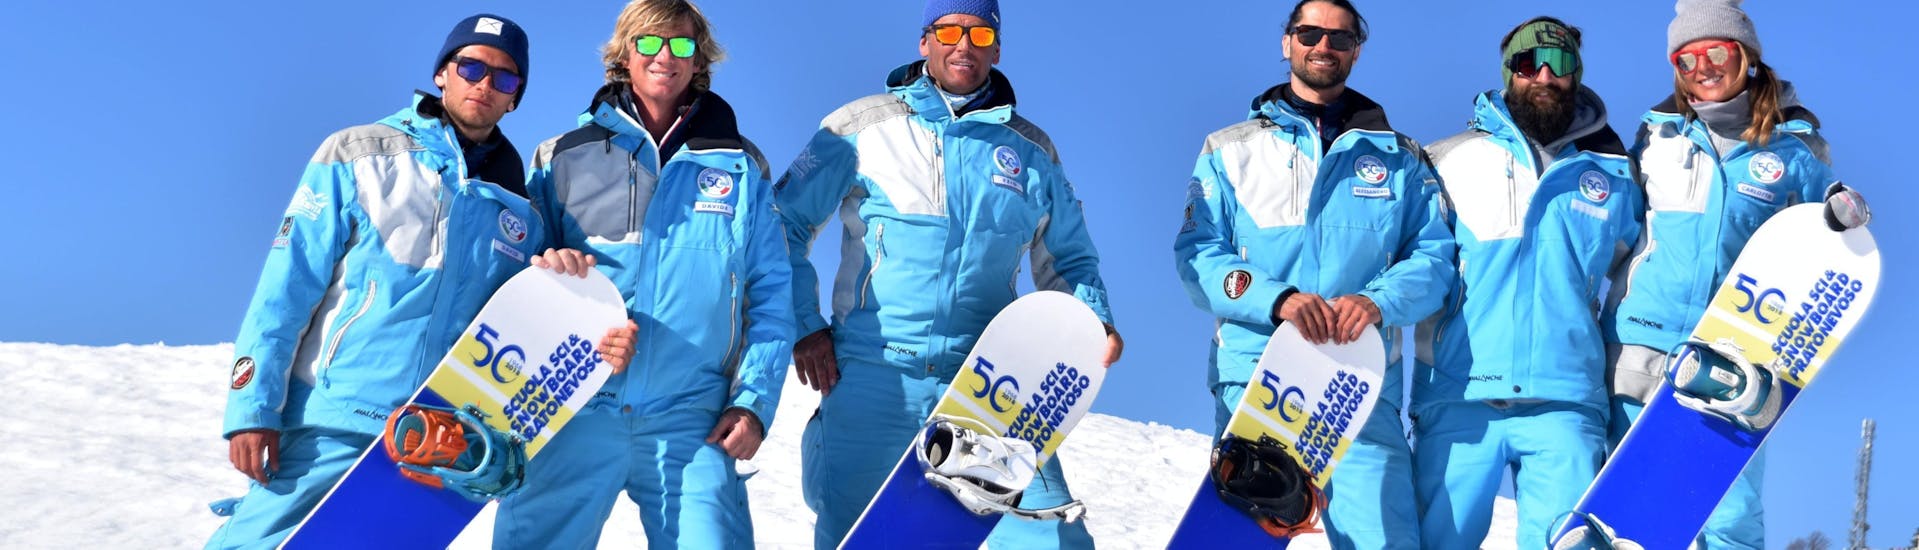 Snowboardinstructeurs glimlachen naar de camera in Prato Nevoso na een van de privé-snowboardlessen voor kinderen en volwassenen van alle niveaus.